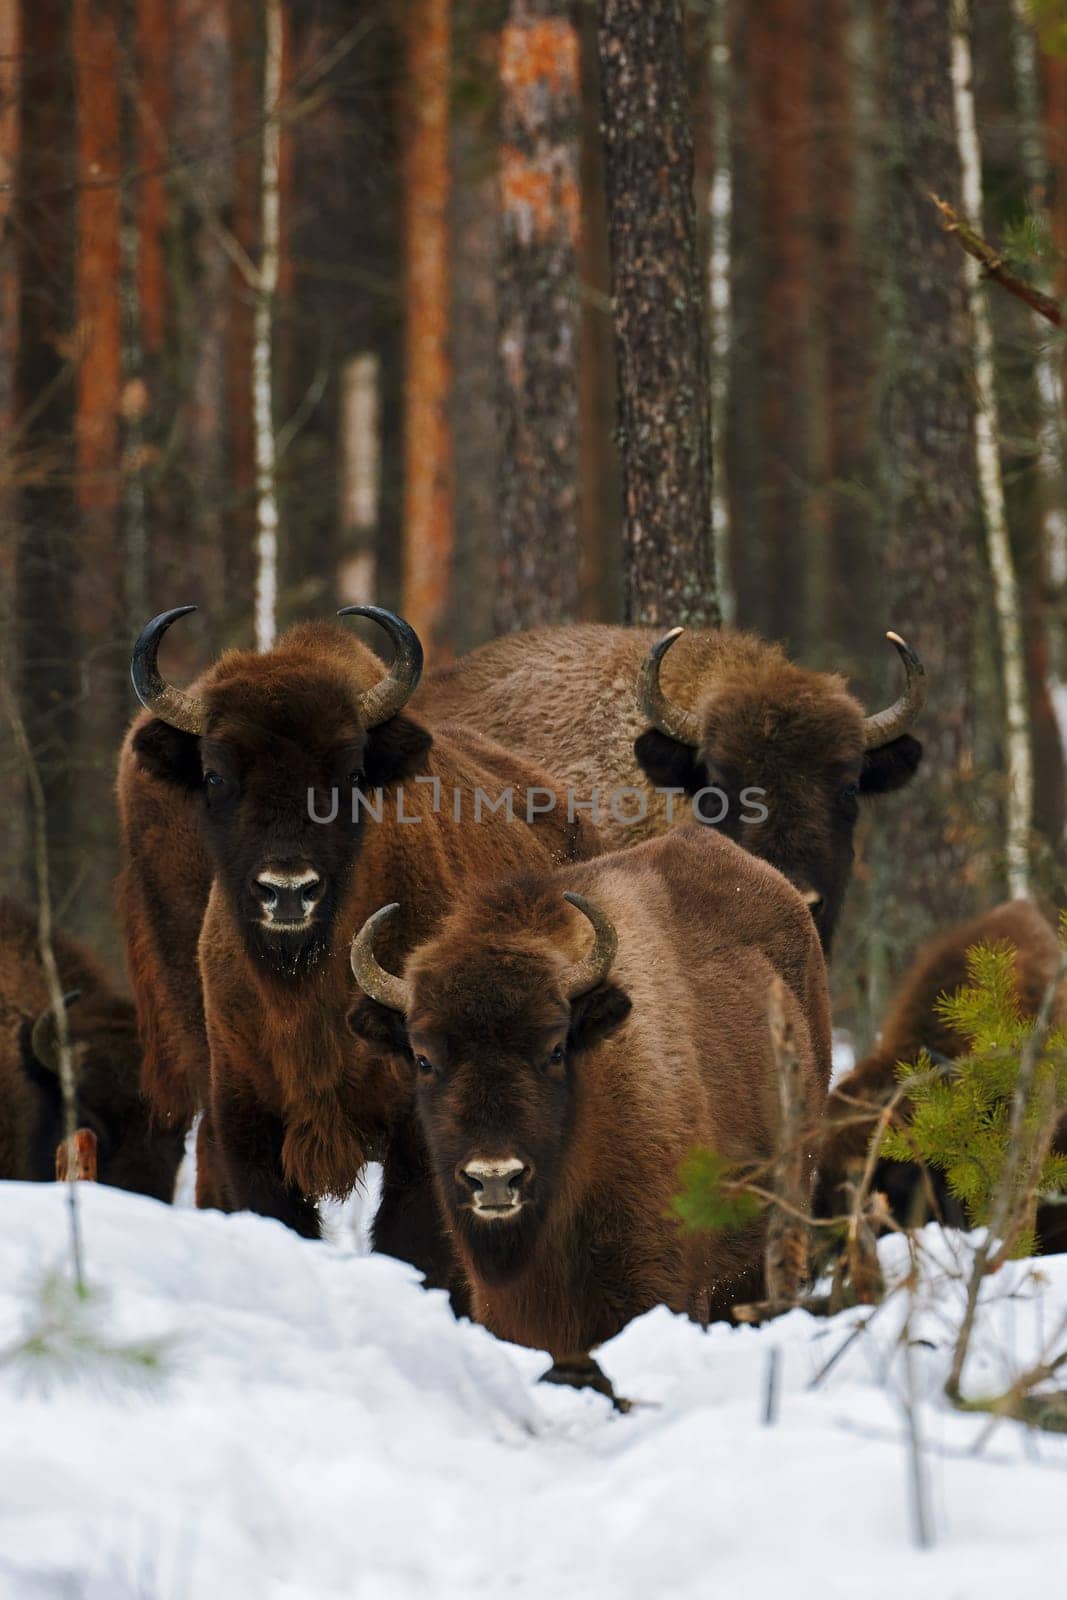 Wild European Bisons family in Winter Forest. European bison - Bison bonasus, artiodactyl mammals of the genus bison by EvgeniyQW